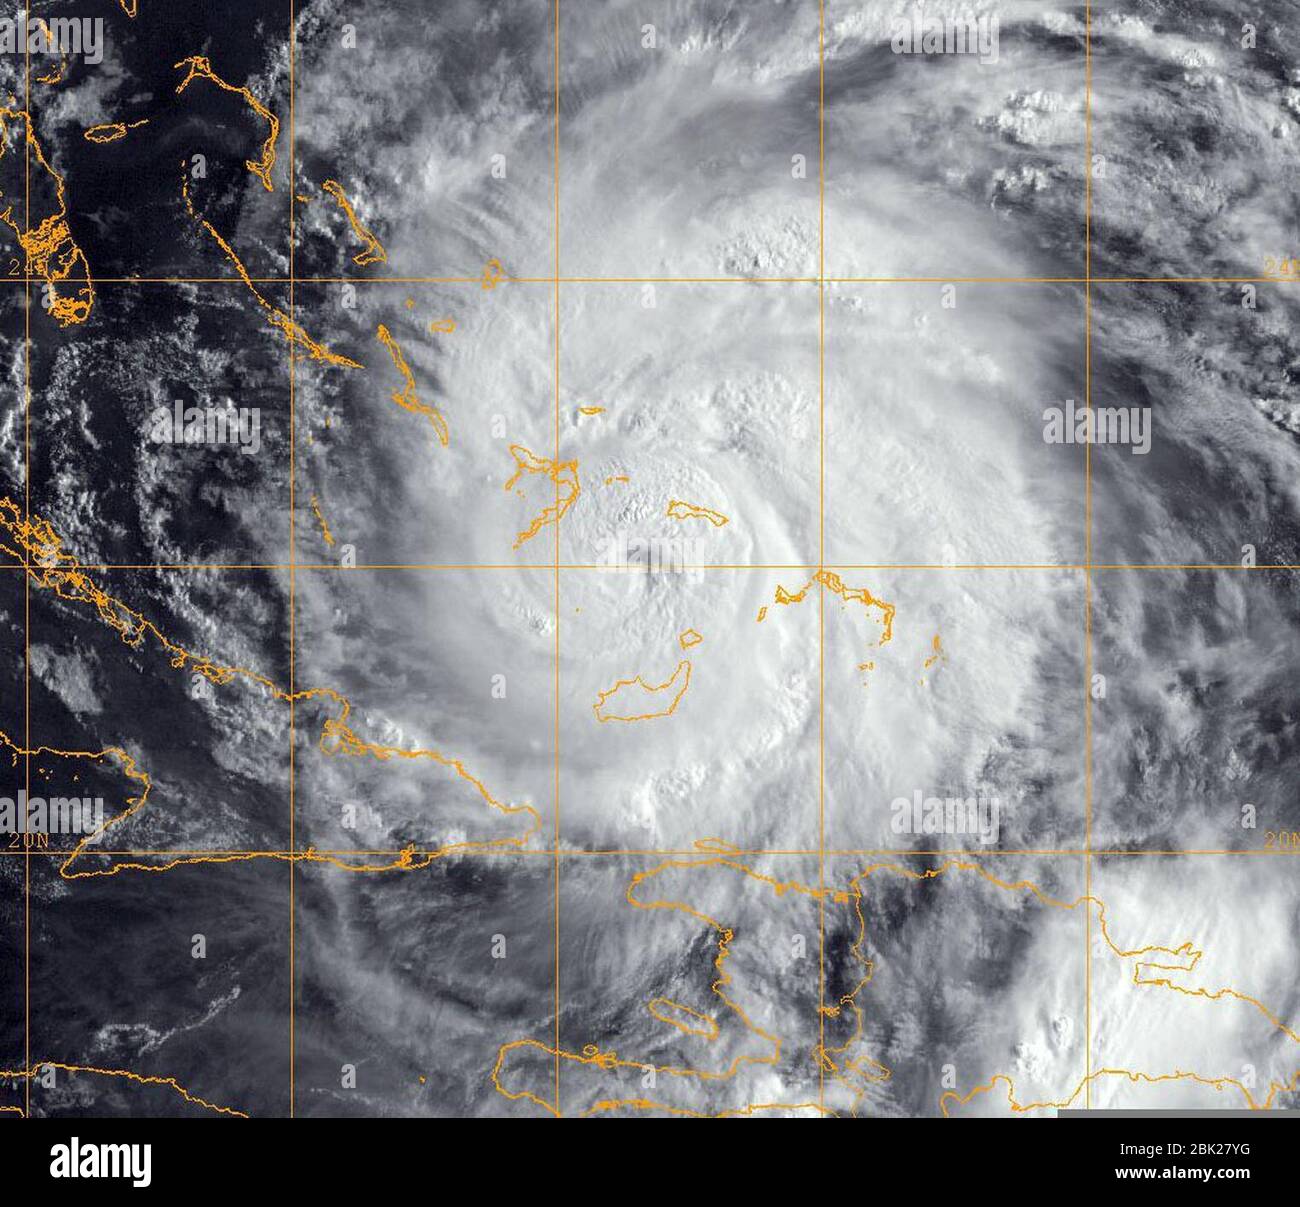 Hurricane Irene (2011) - satellite image 2011-08-24. Stock Photo